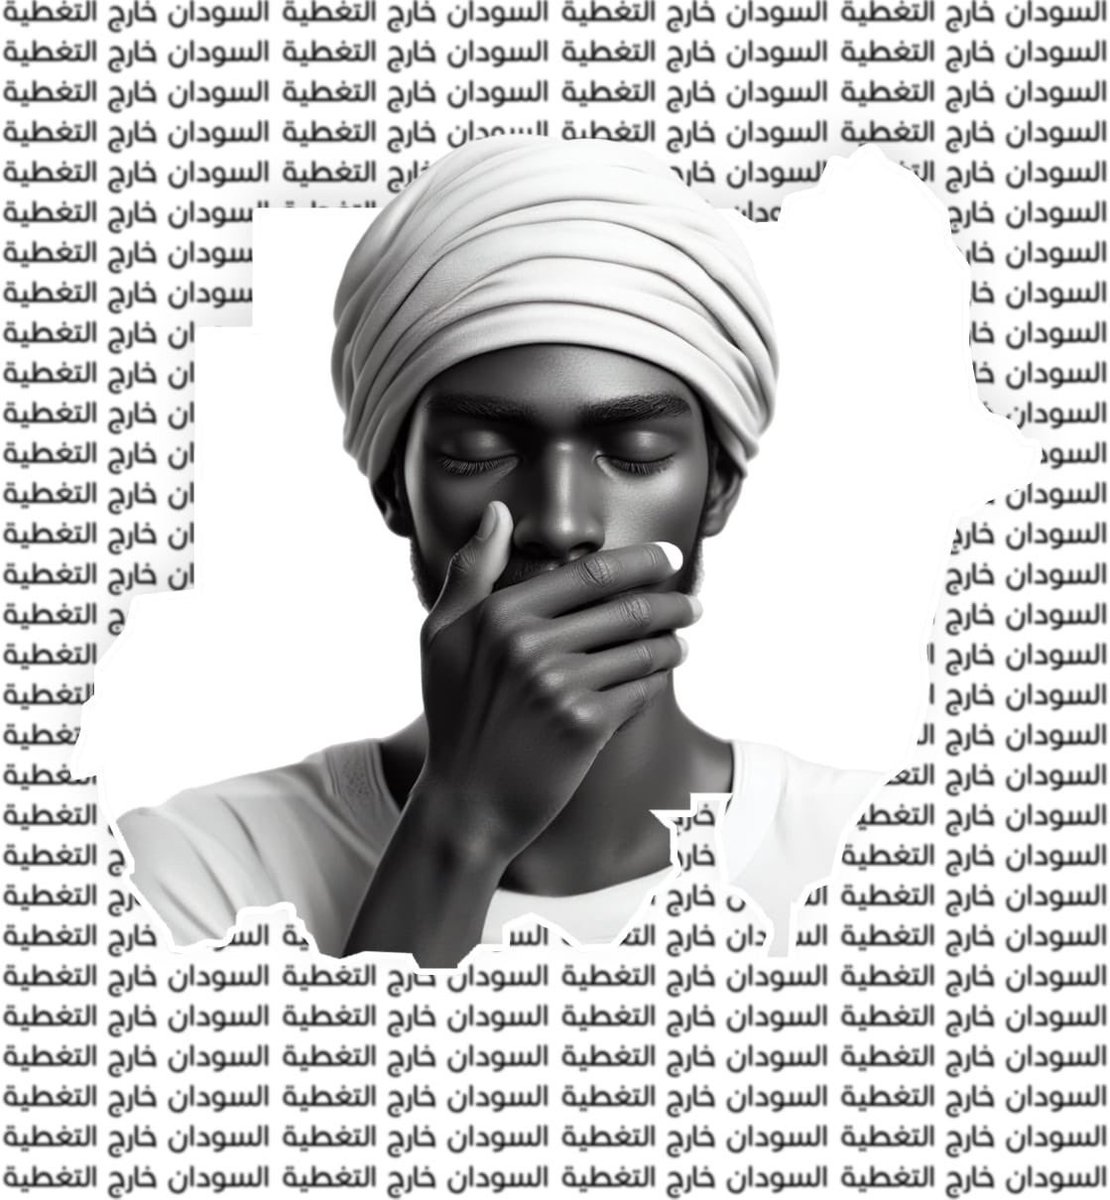 Sudan’da iletişimin kesilmesinin üzerinden bir hafta geçti. RSF dış dünyayla alakasını kestiği Darfur’da sessiz bir soykırım gerçekleştiriyor. En azından dualarımızda unutmayalım Sudan’ı ve orada olup bitenleri de öğrenmeye ve duyurmaya çalışalım. #Sudan_Blackout #KeepEyesOnSudan…